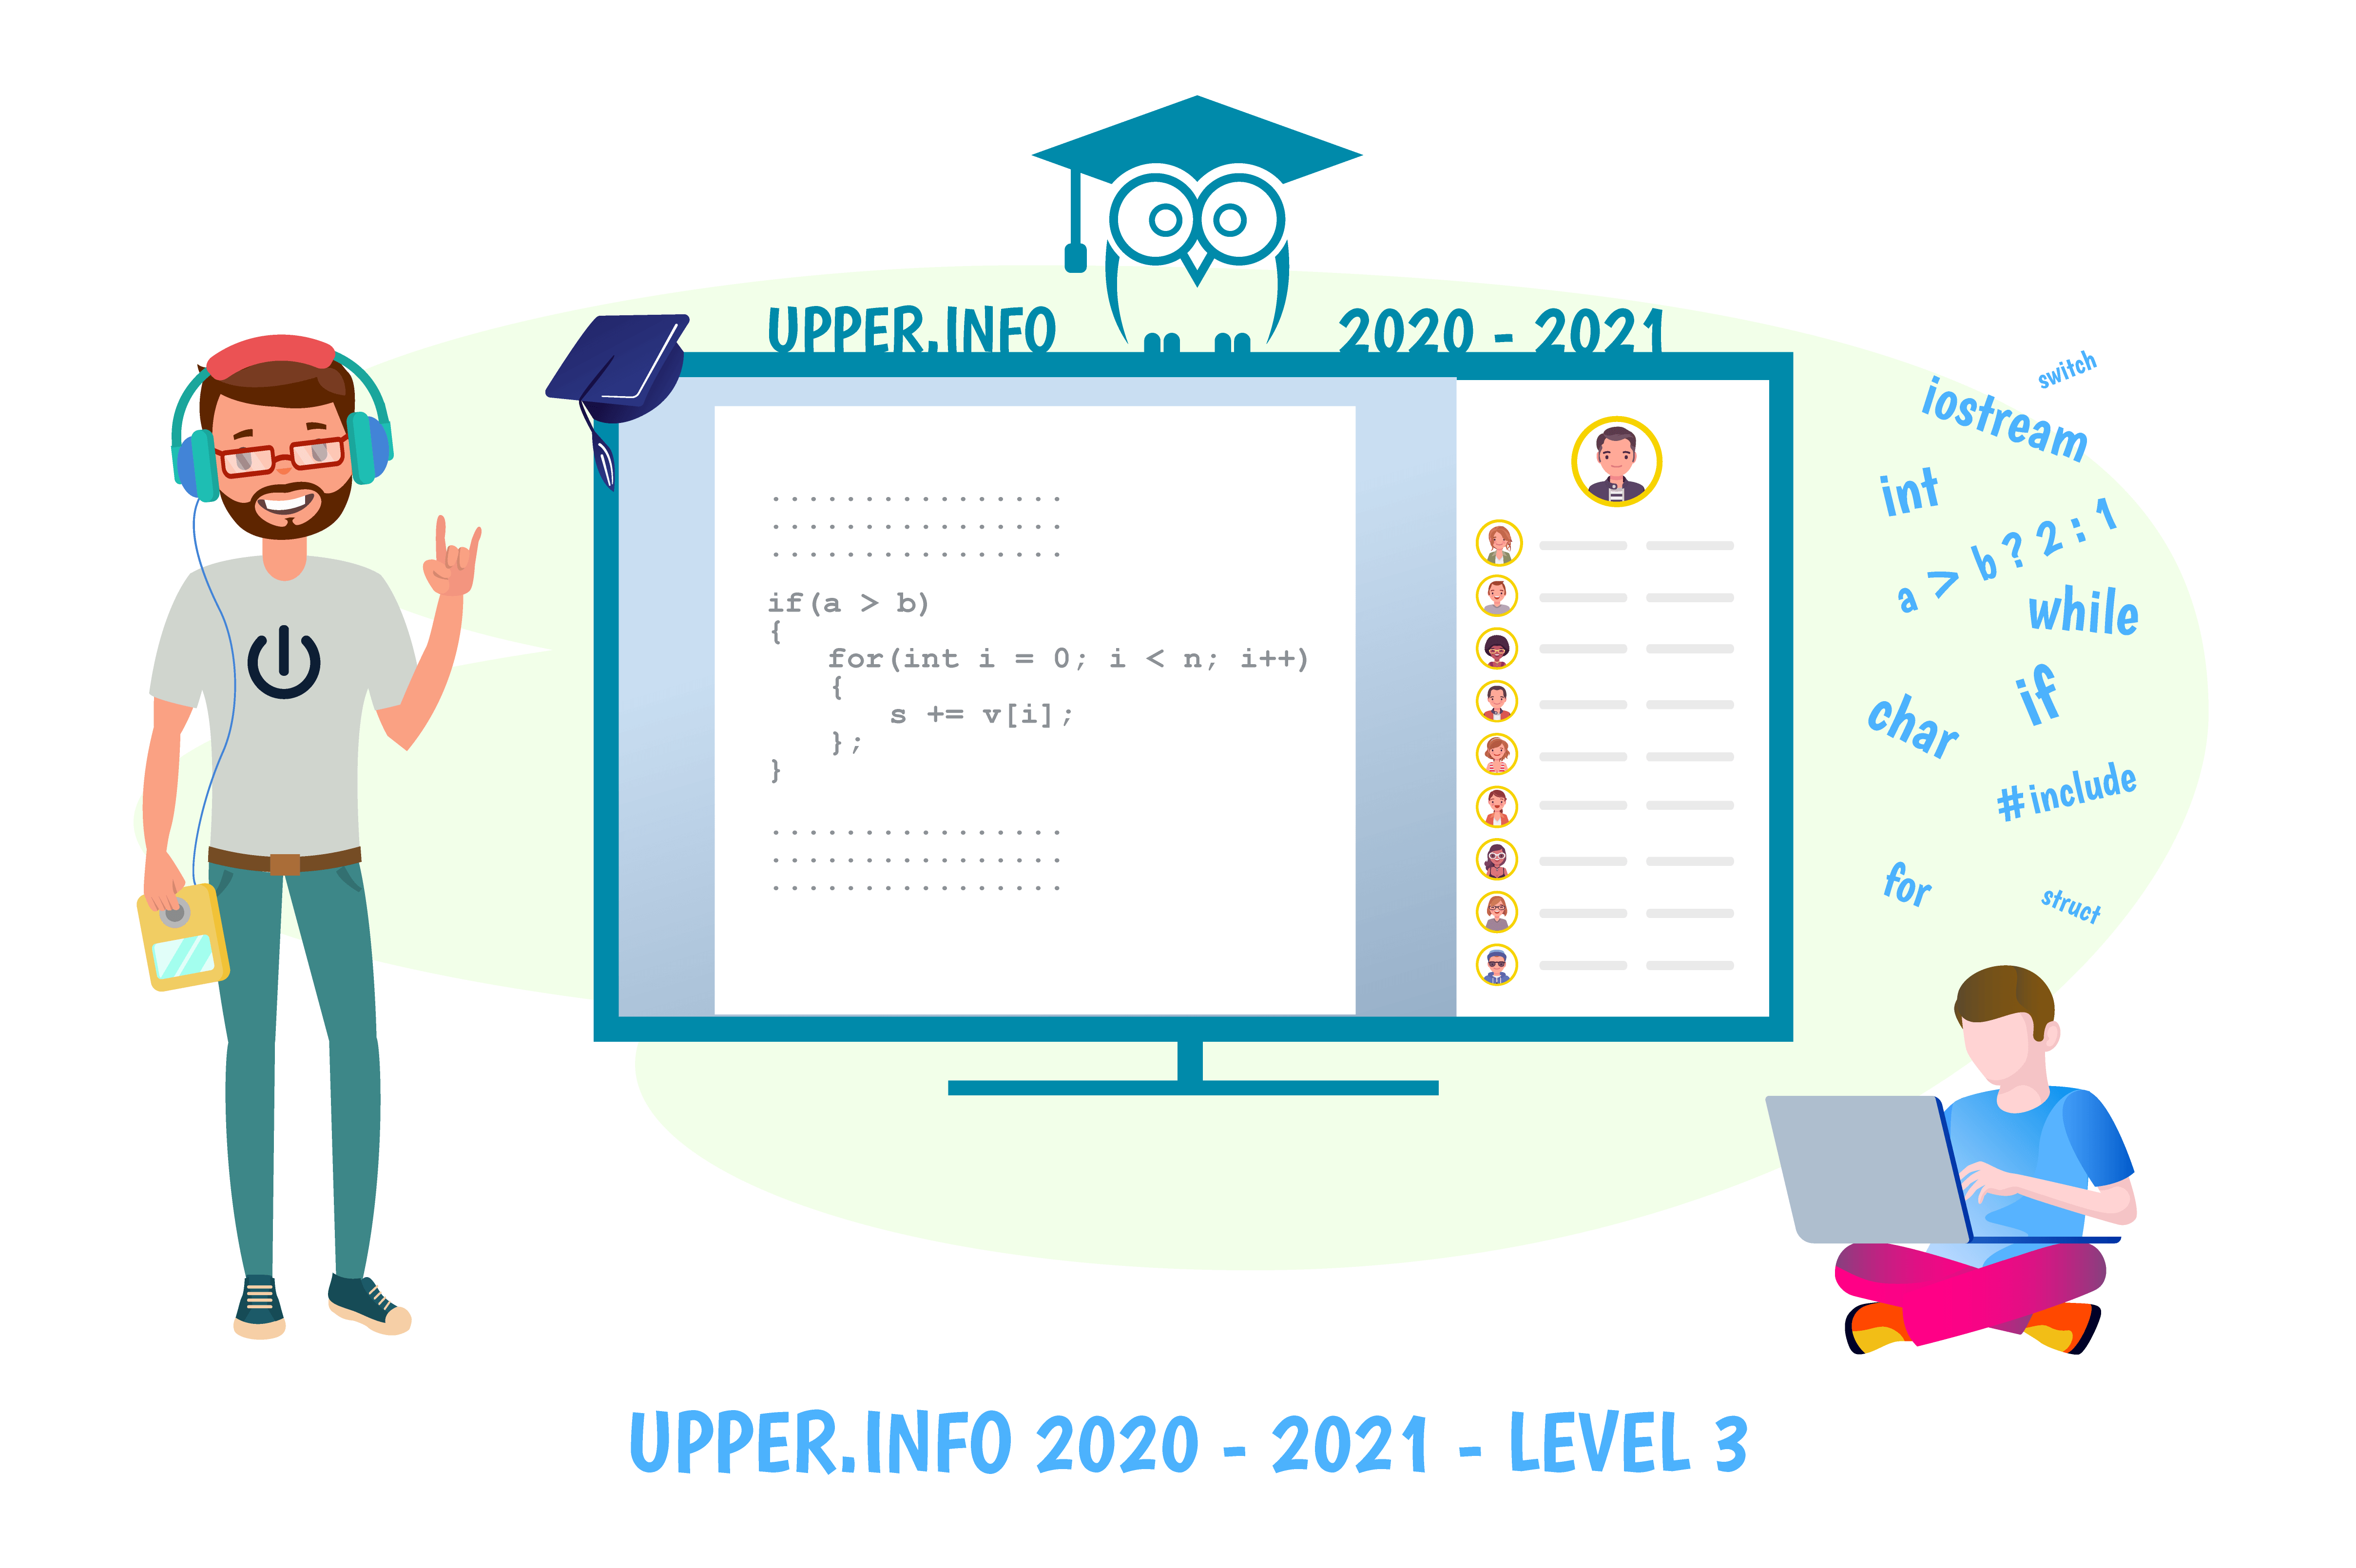 Upper.Info 2020-2021 Level 3